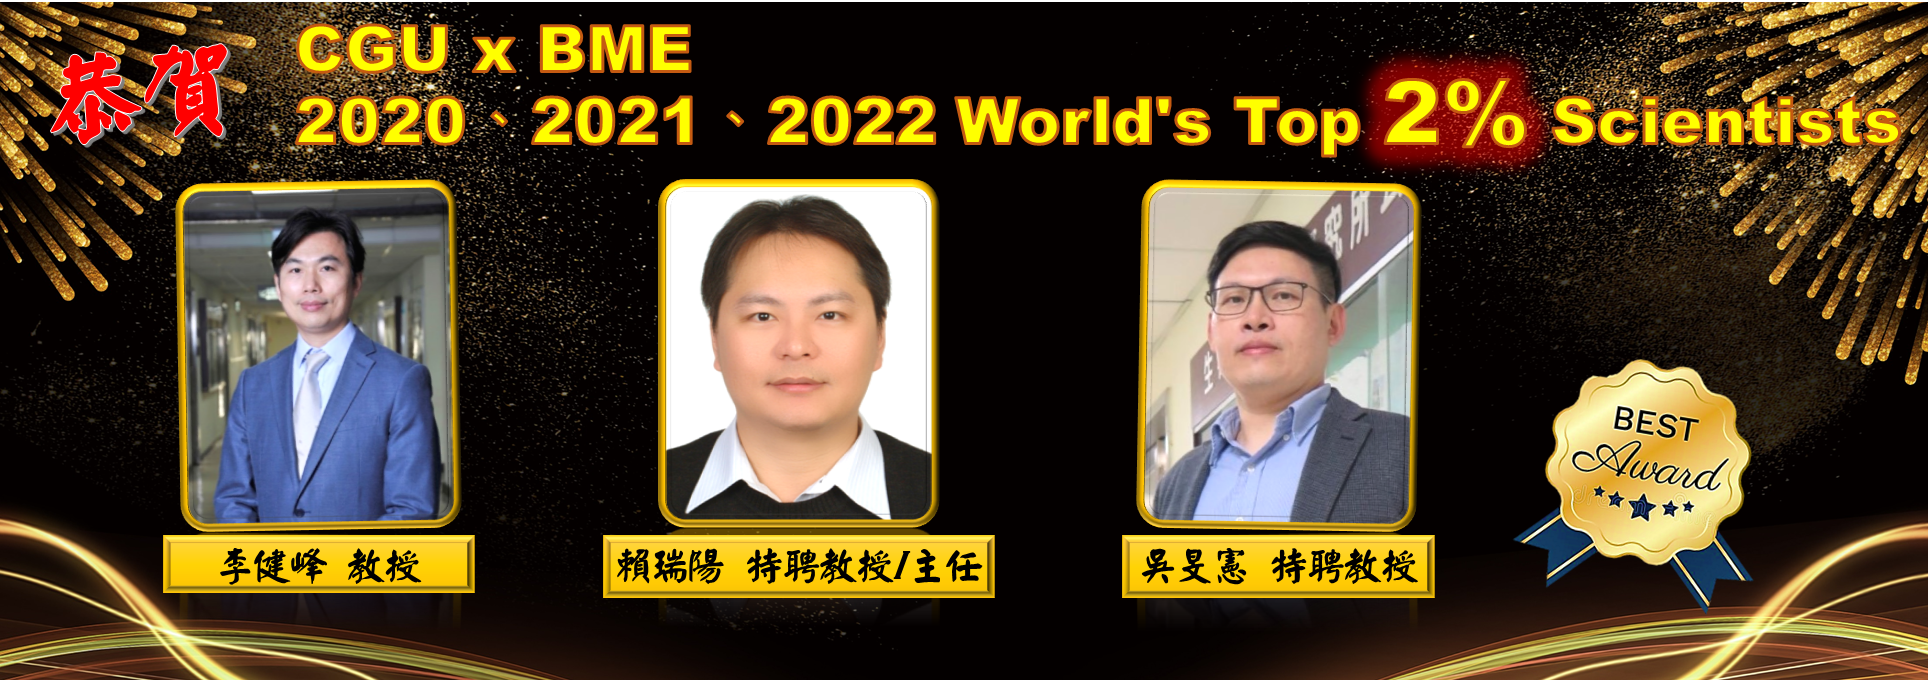 狂賀 本系 賴瑞陽特聘教授 吳旻憲特聘教授 李健峰教授 榮獲「2022全球前2%頂尖科學家（World's Top 2% Scientists）」